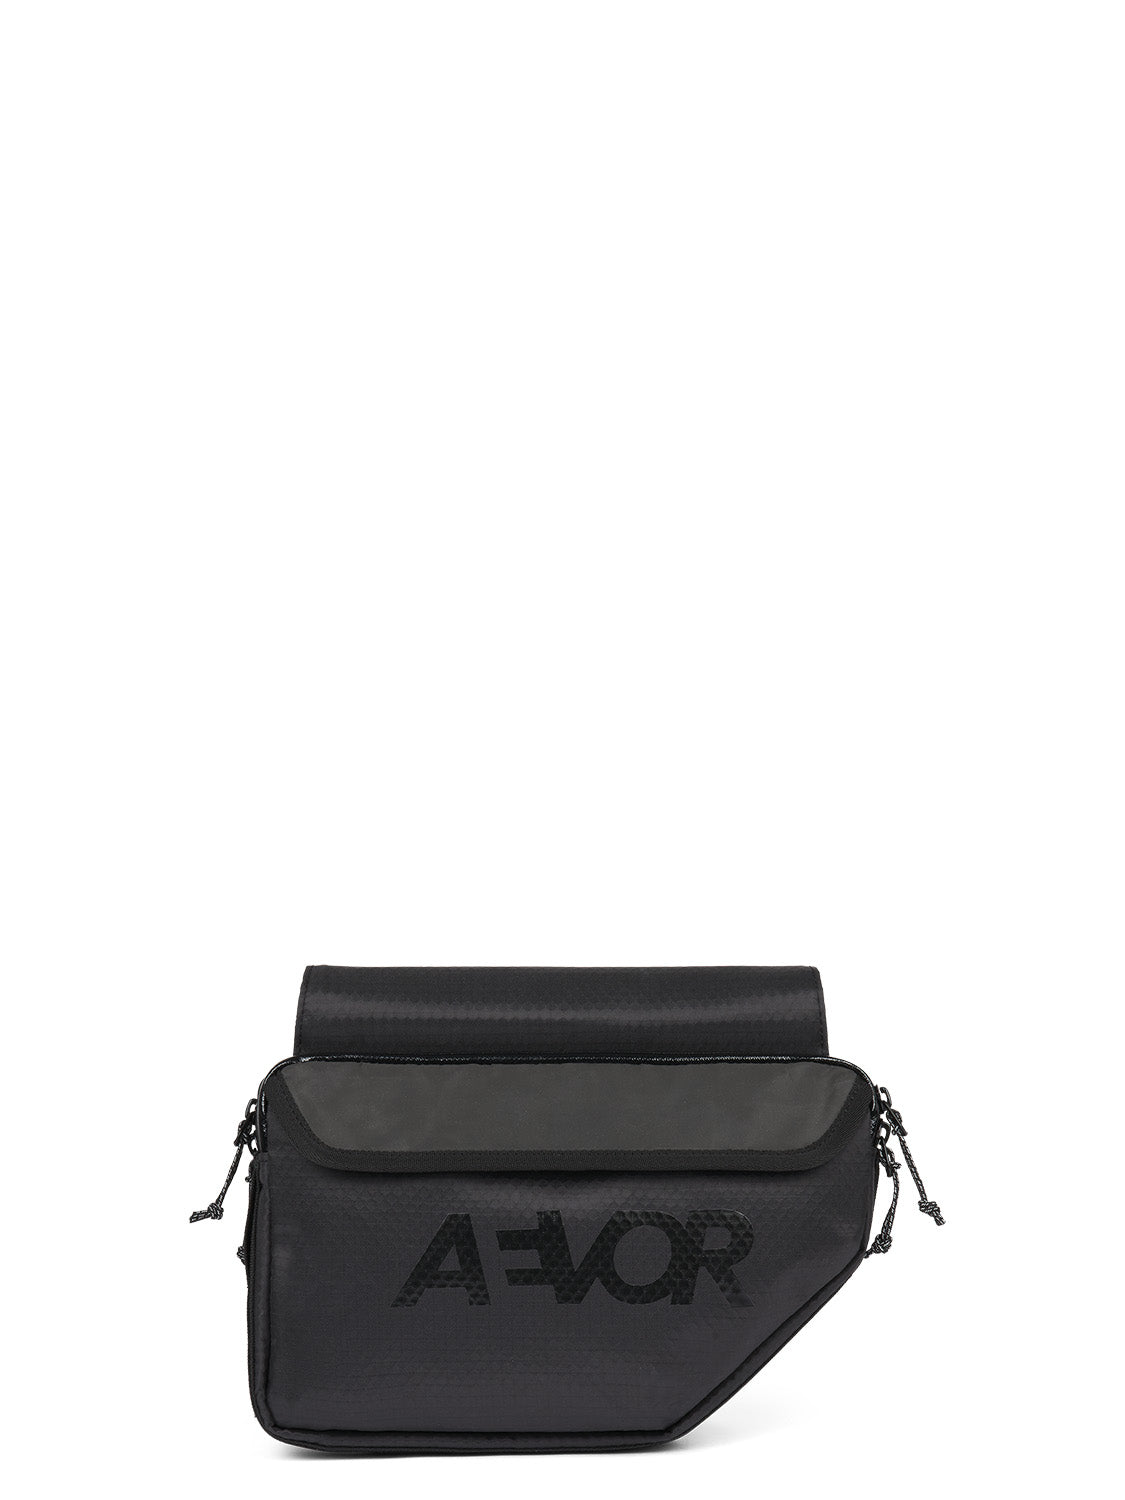 AEVOR-Frame-Bag-Medium-Proof-Black-front